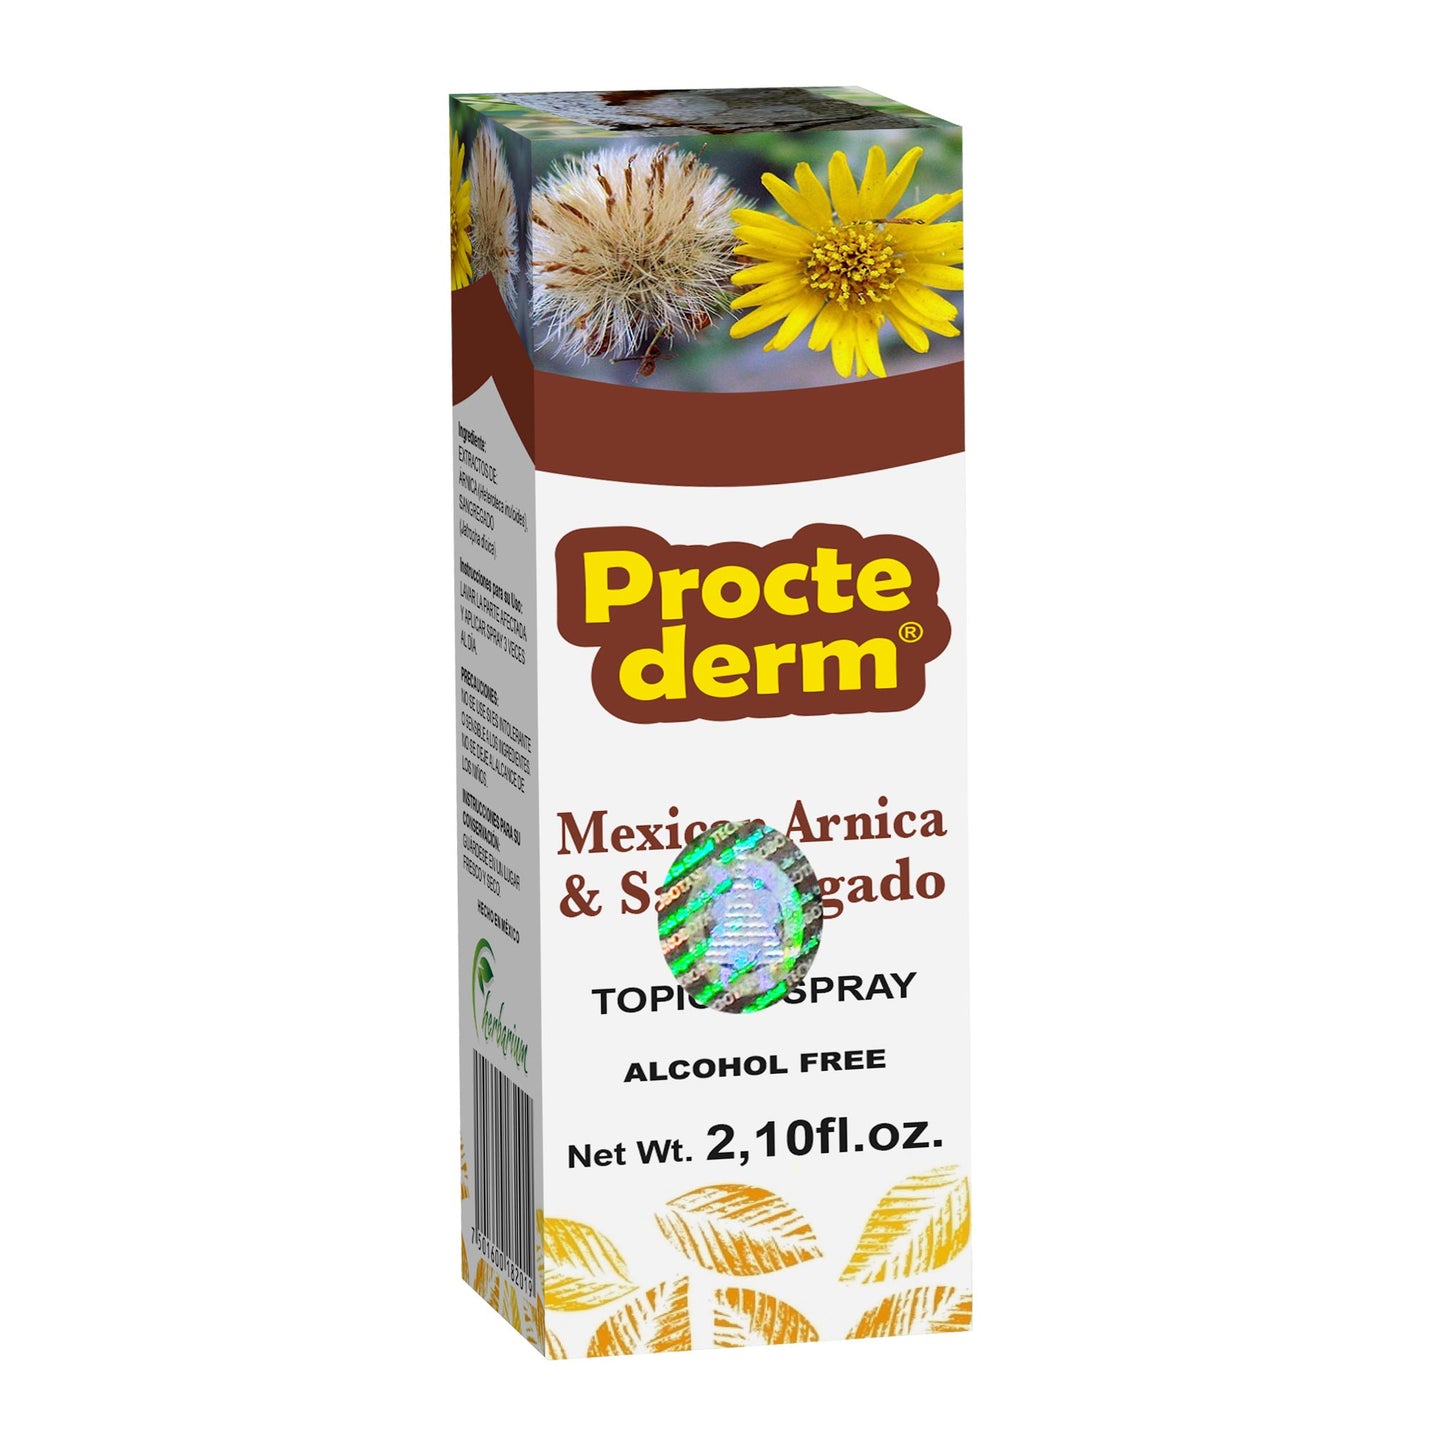 PROCTEDERM ® spray tópico 70ml